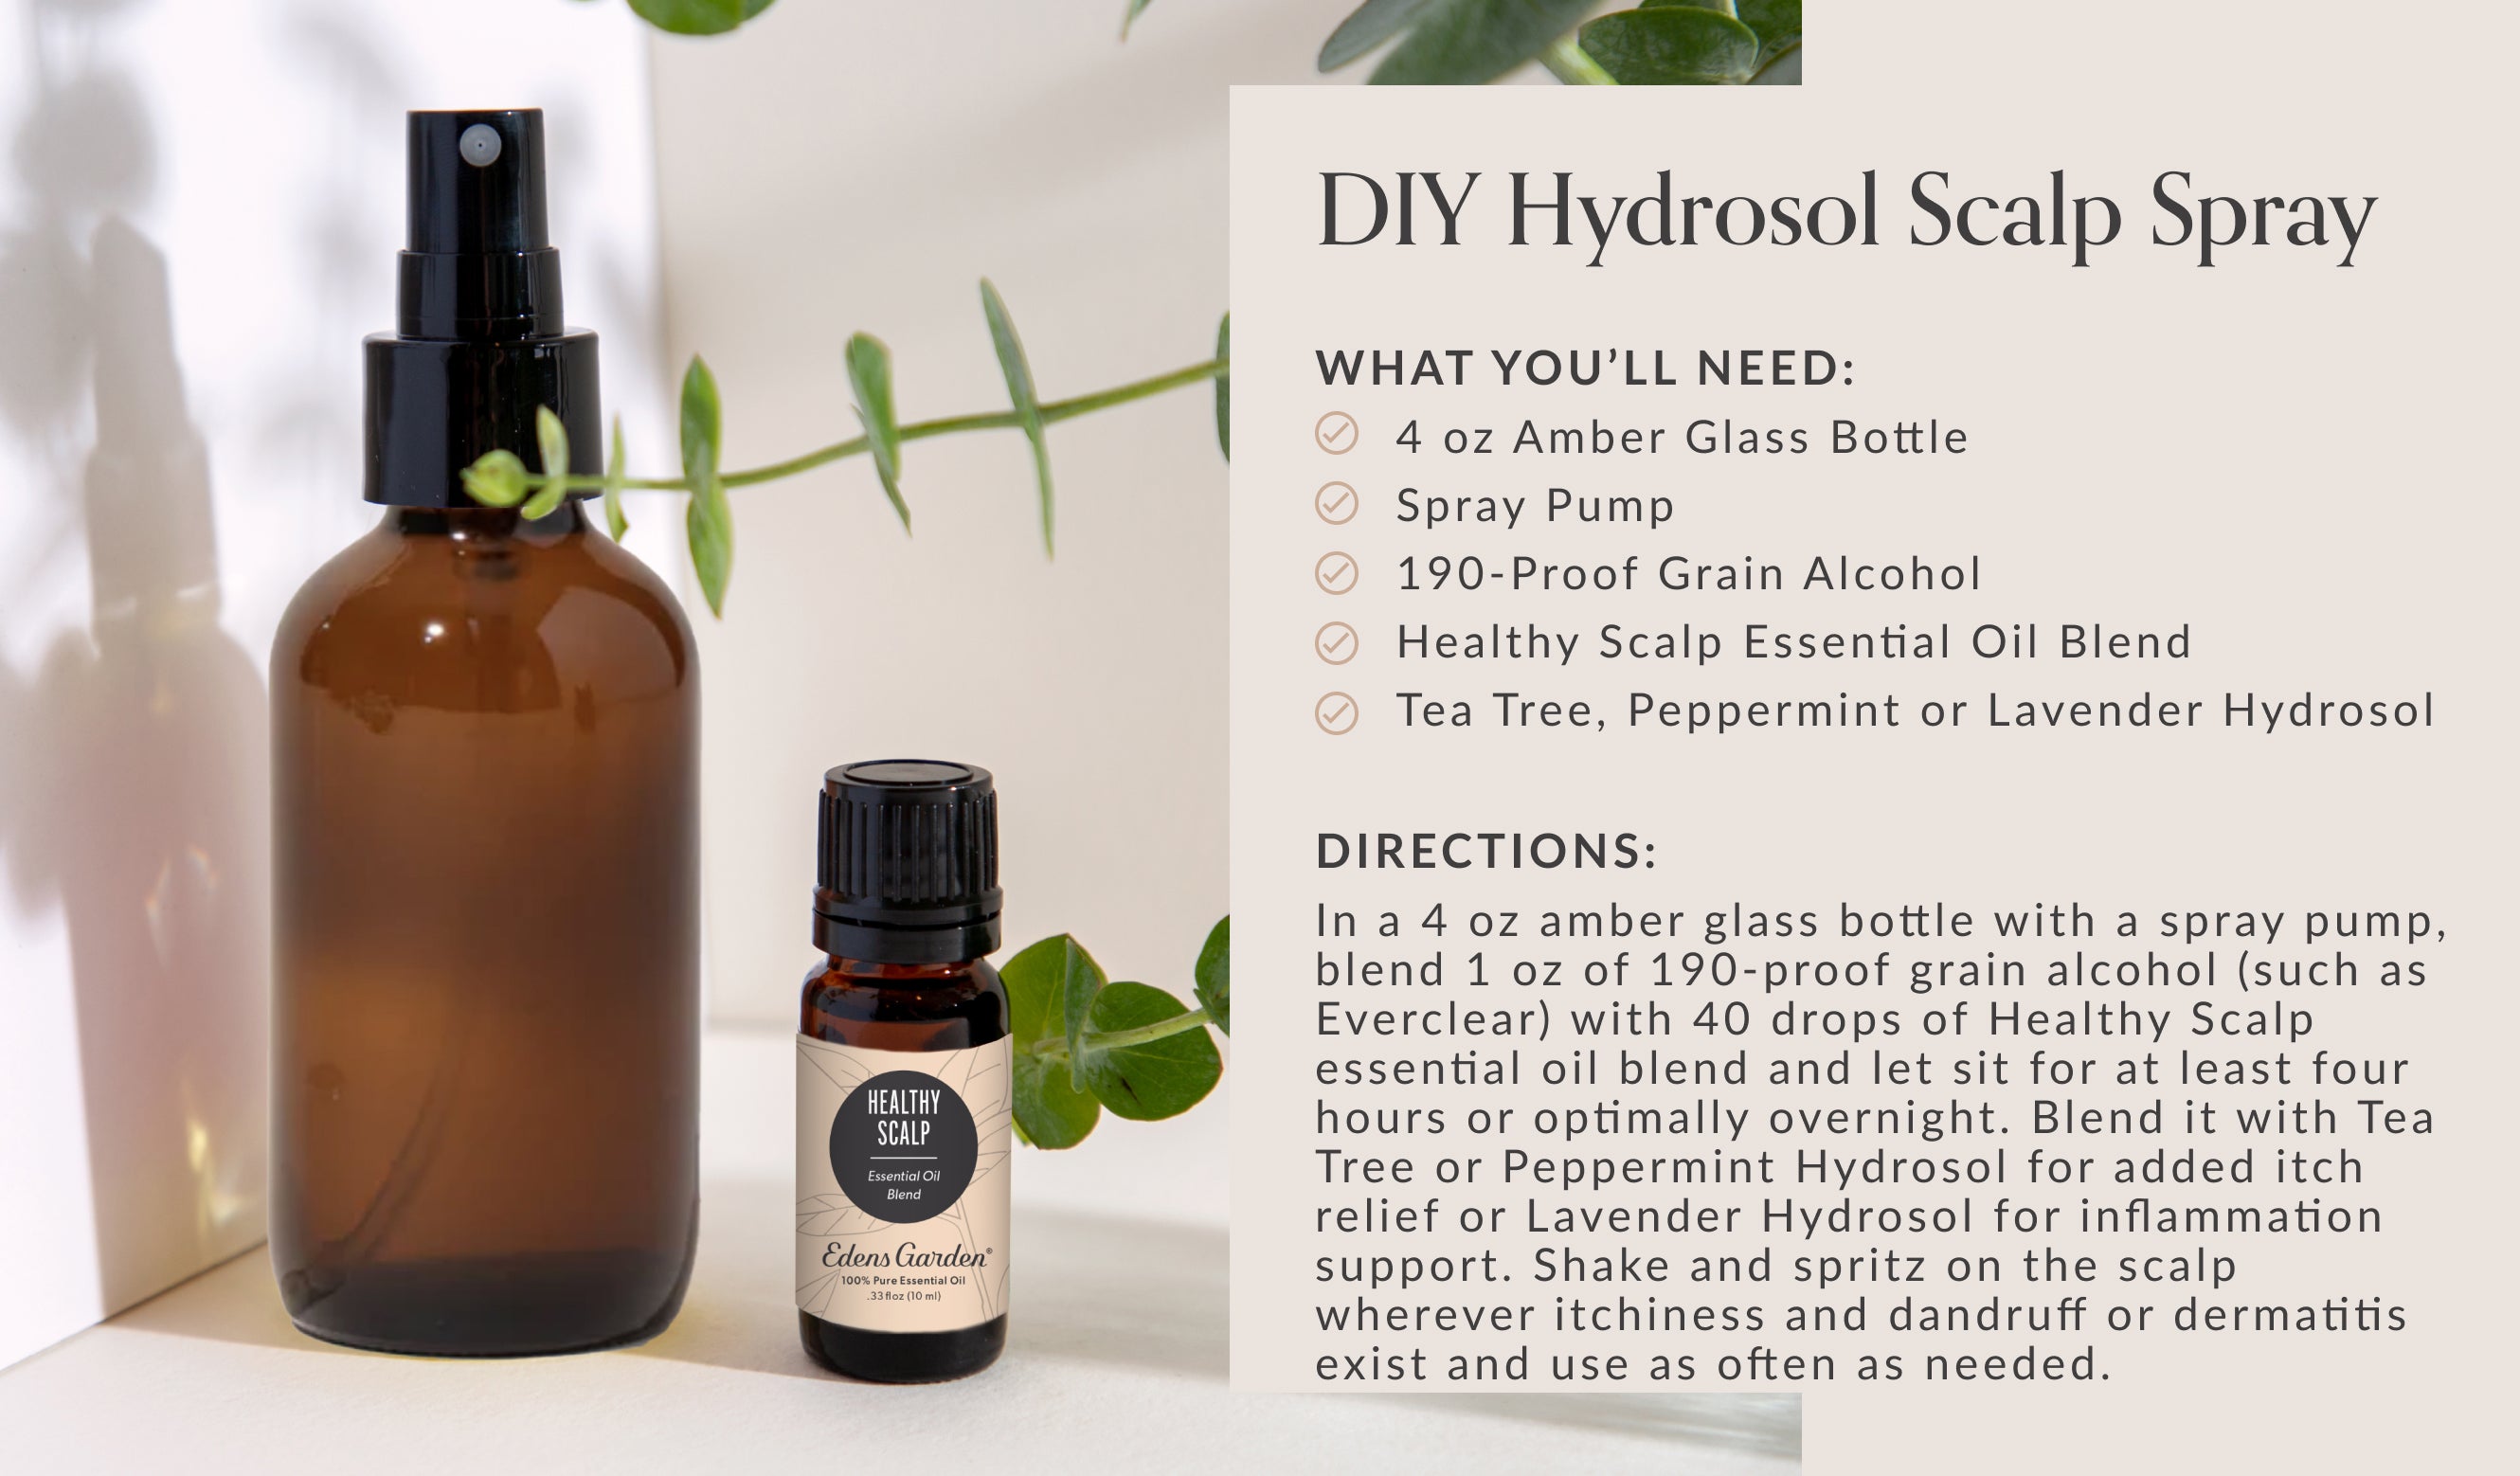 DIY Hydrosol Scalp Spray